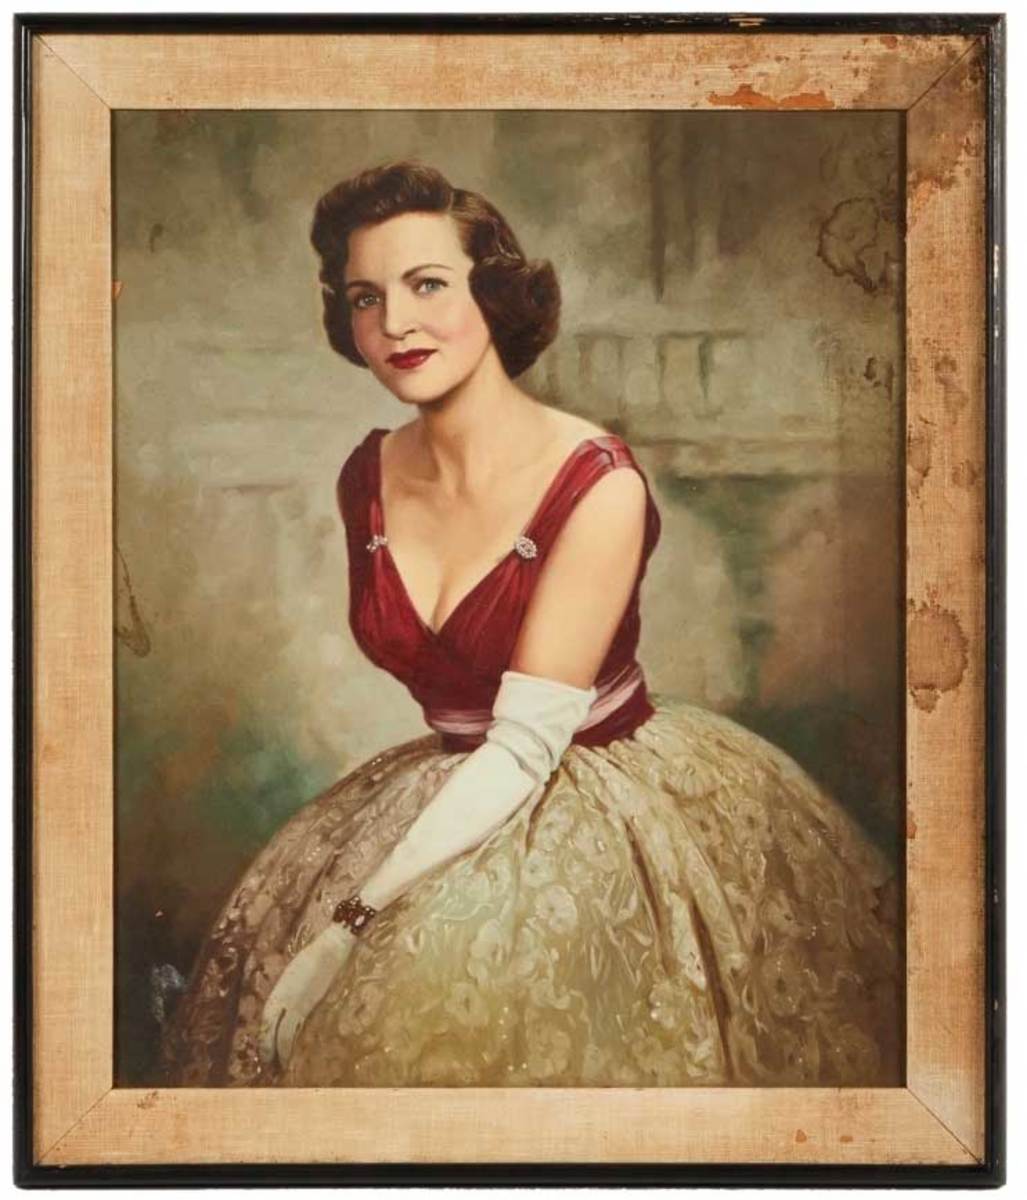 Betty White portrait